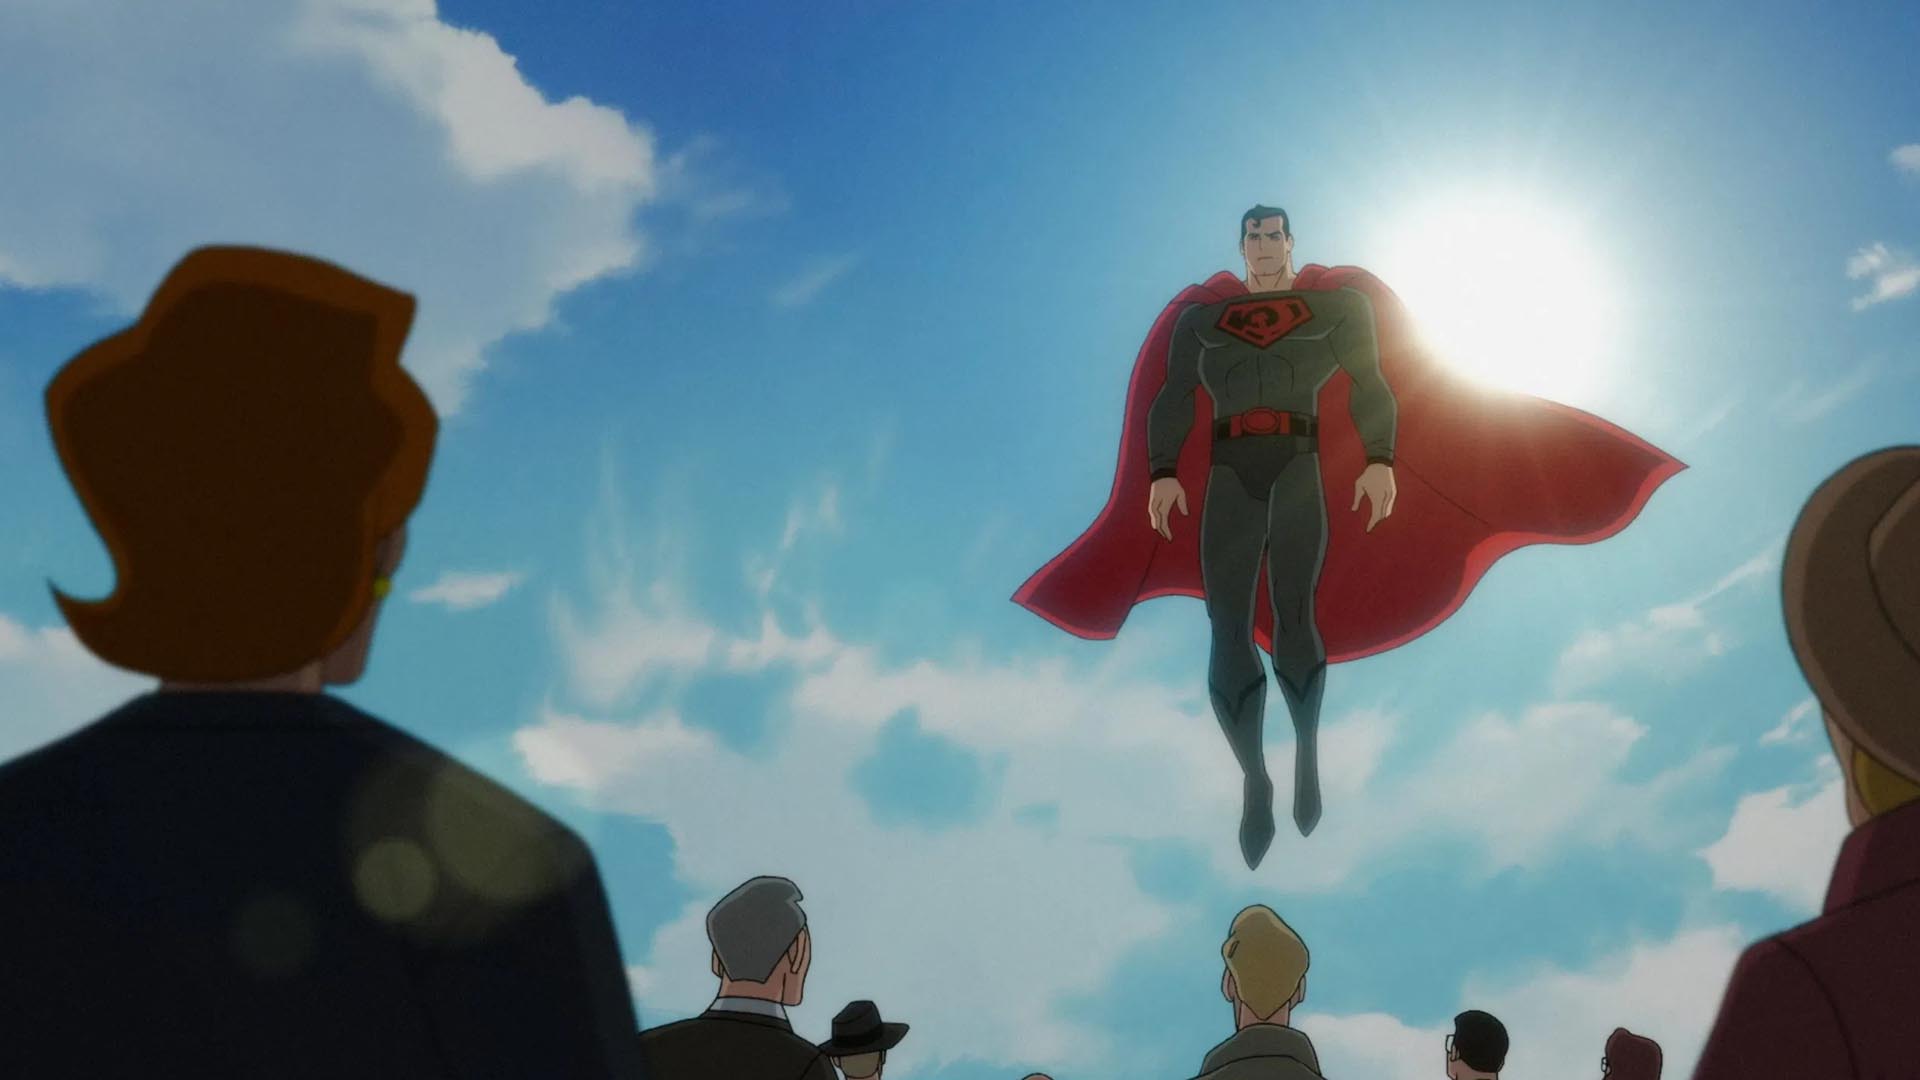 سوپرمن، نماد قدرت شوروی در انیمیشن سوپرمن: پسر سرخ – Superman: Red Son